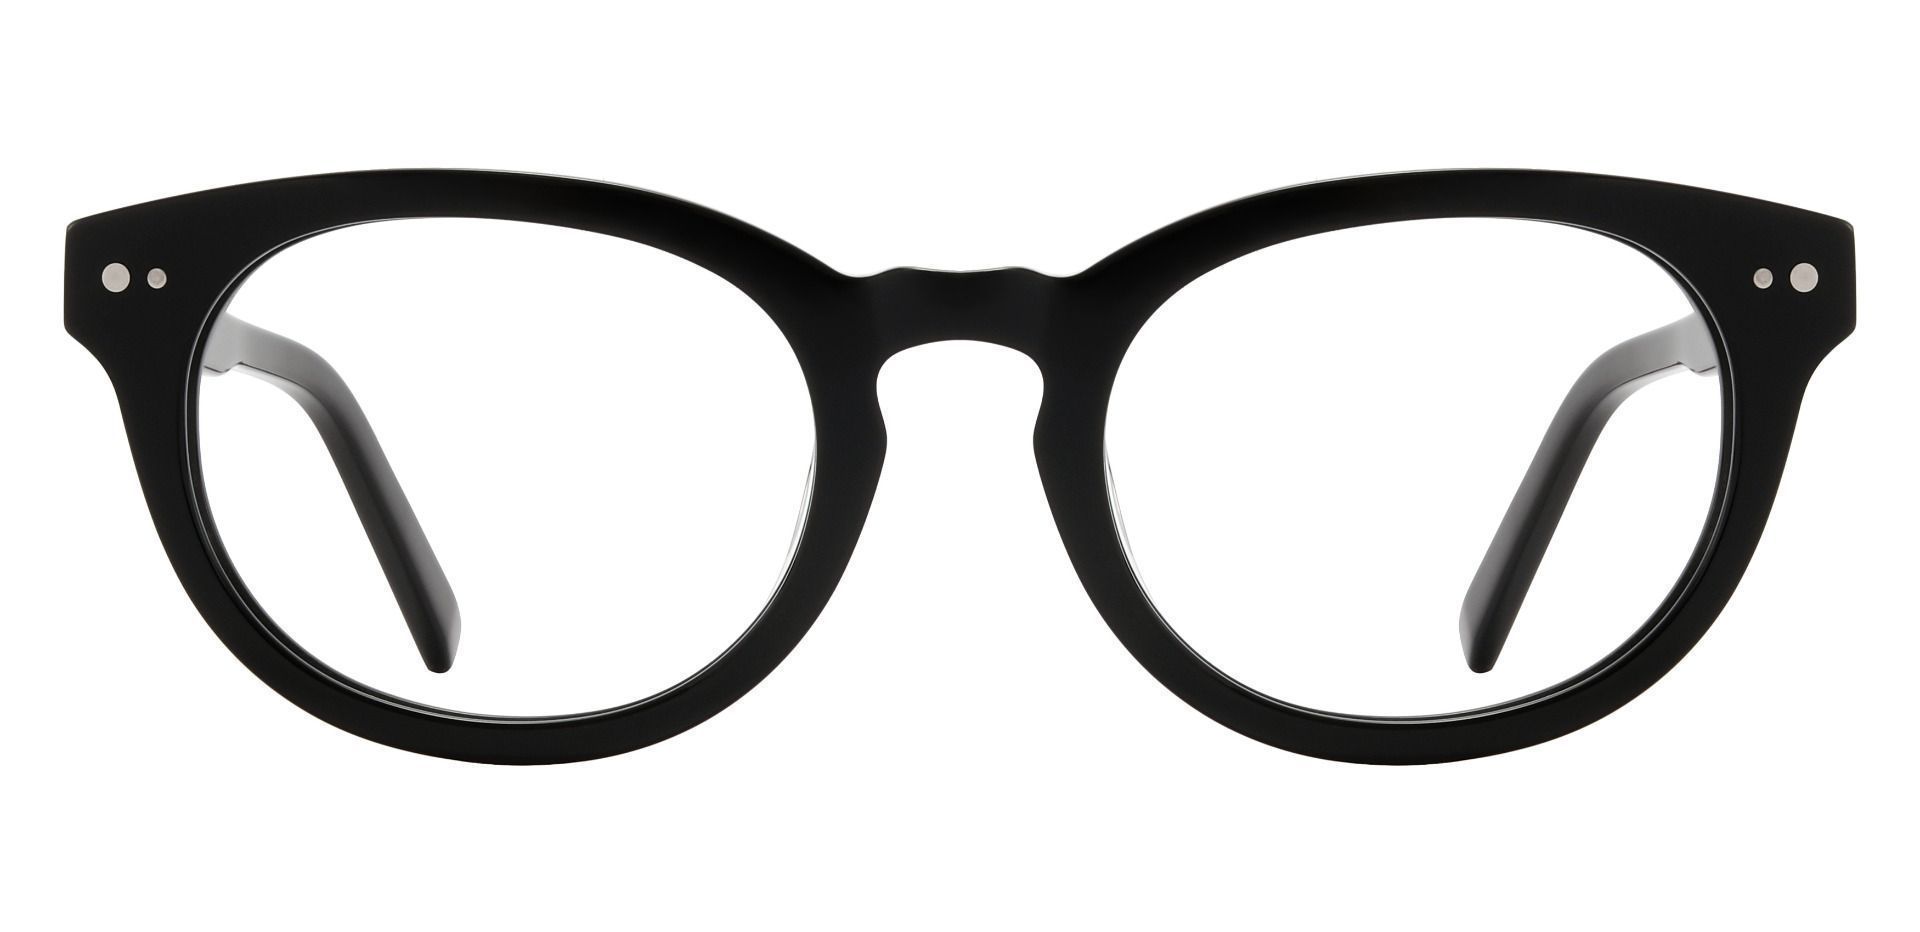 Heather Oval Prescription Glasses - Black